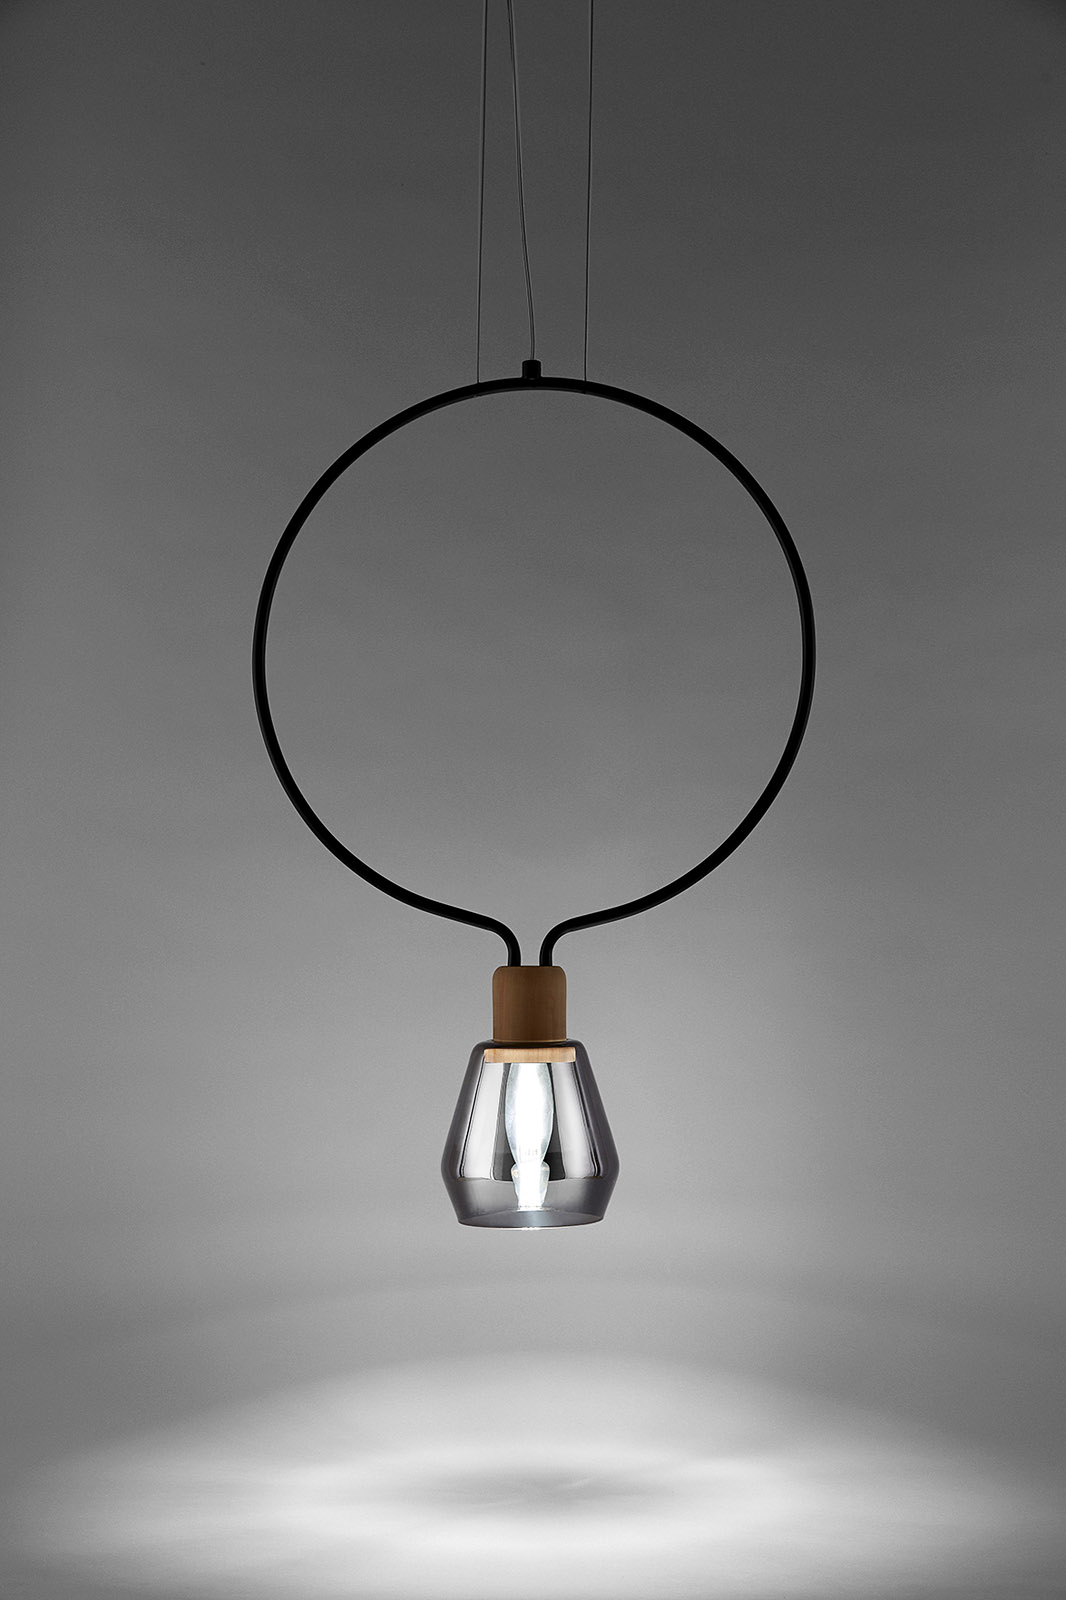 Дизайн подвесных светильников Agata, фото